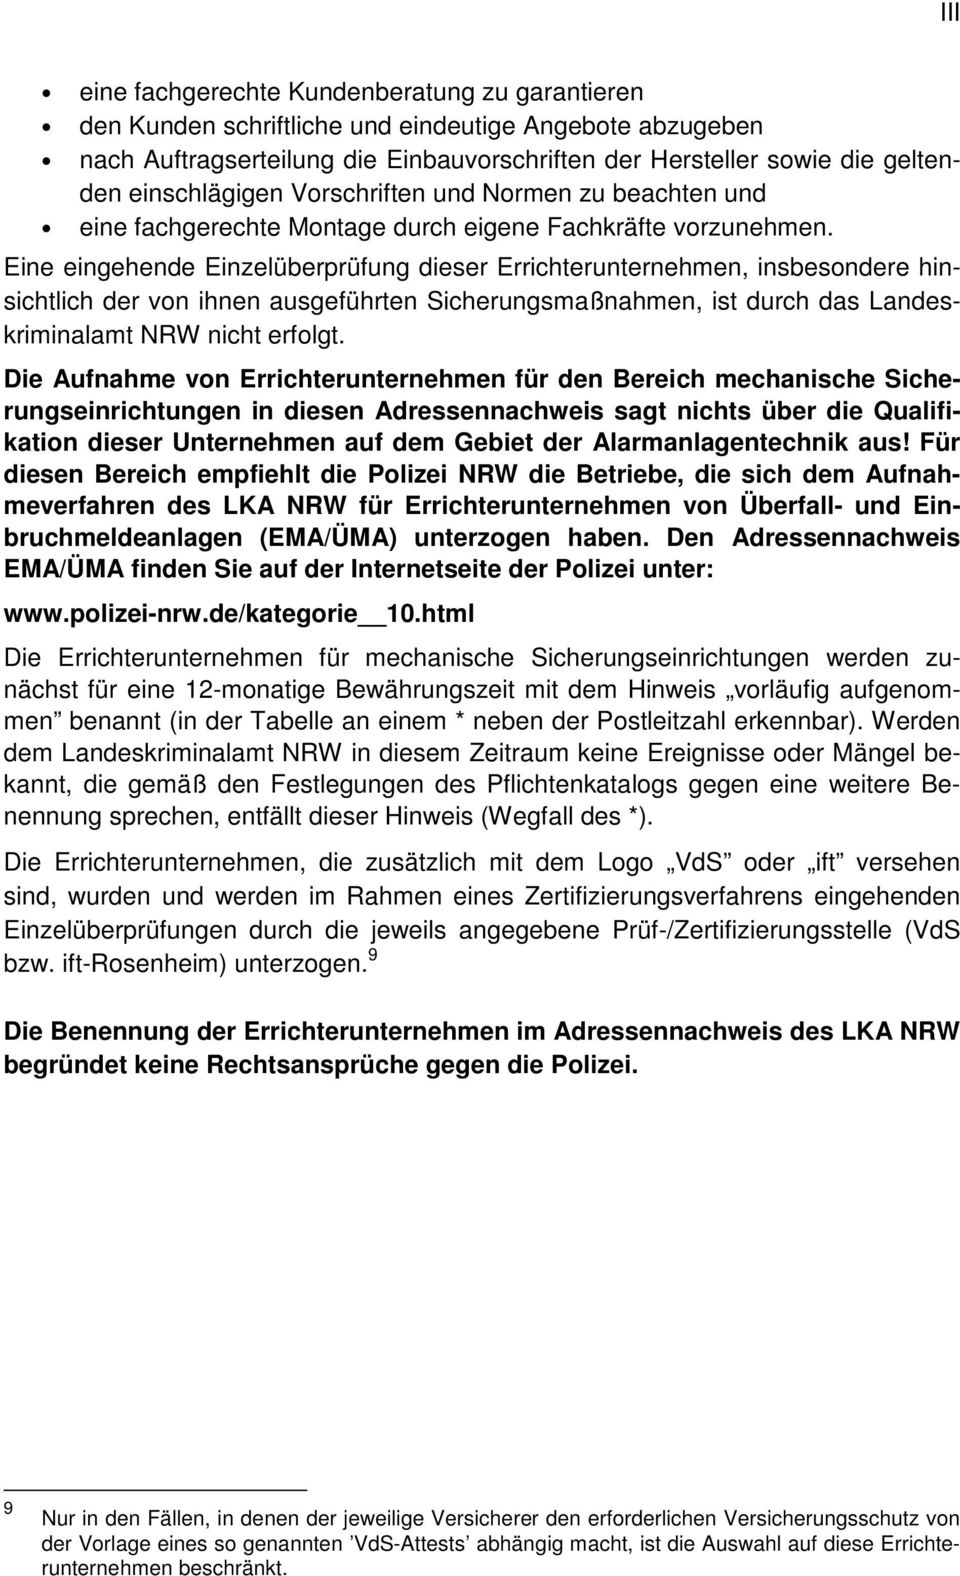 Eine eingehende Einzelüberprüfung dieser Errichterunternehmen, insbesondere hinsichtlich der von ihnen ausgeführten Sicherungsmaßnahmen, ist durch das Landeskriminalamt NRW nicht erfolgt.